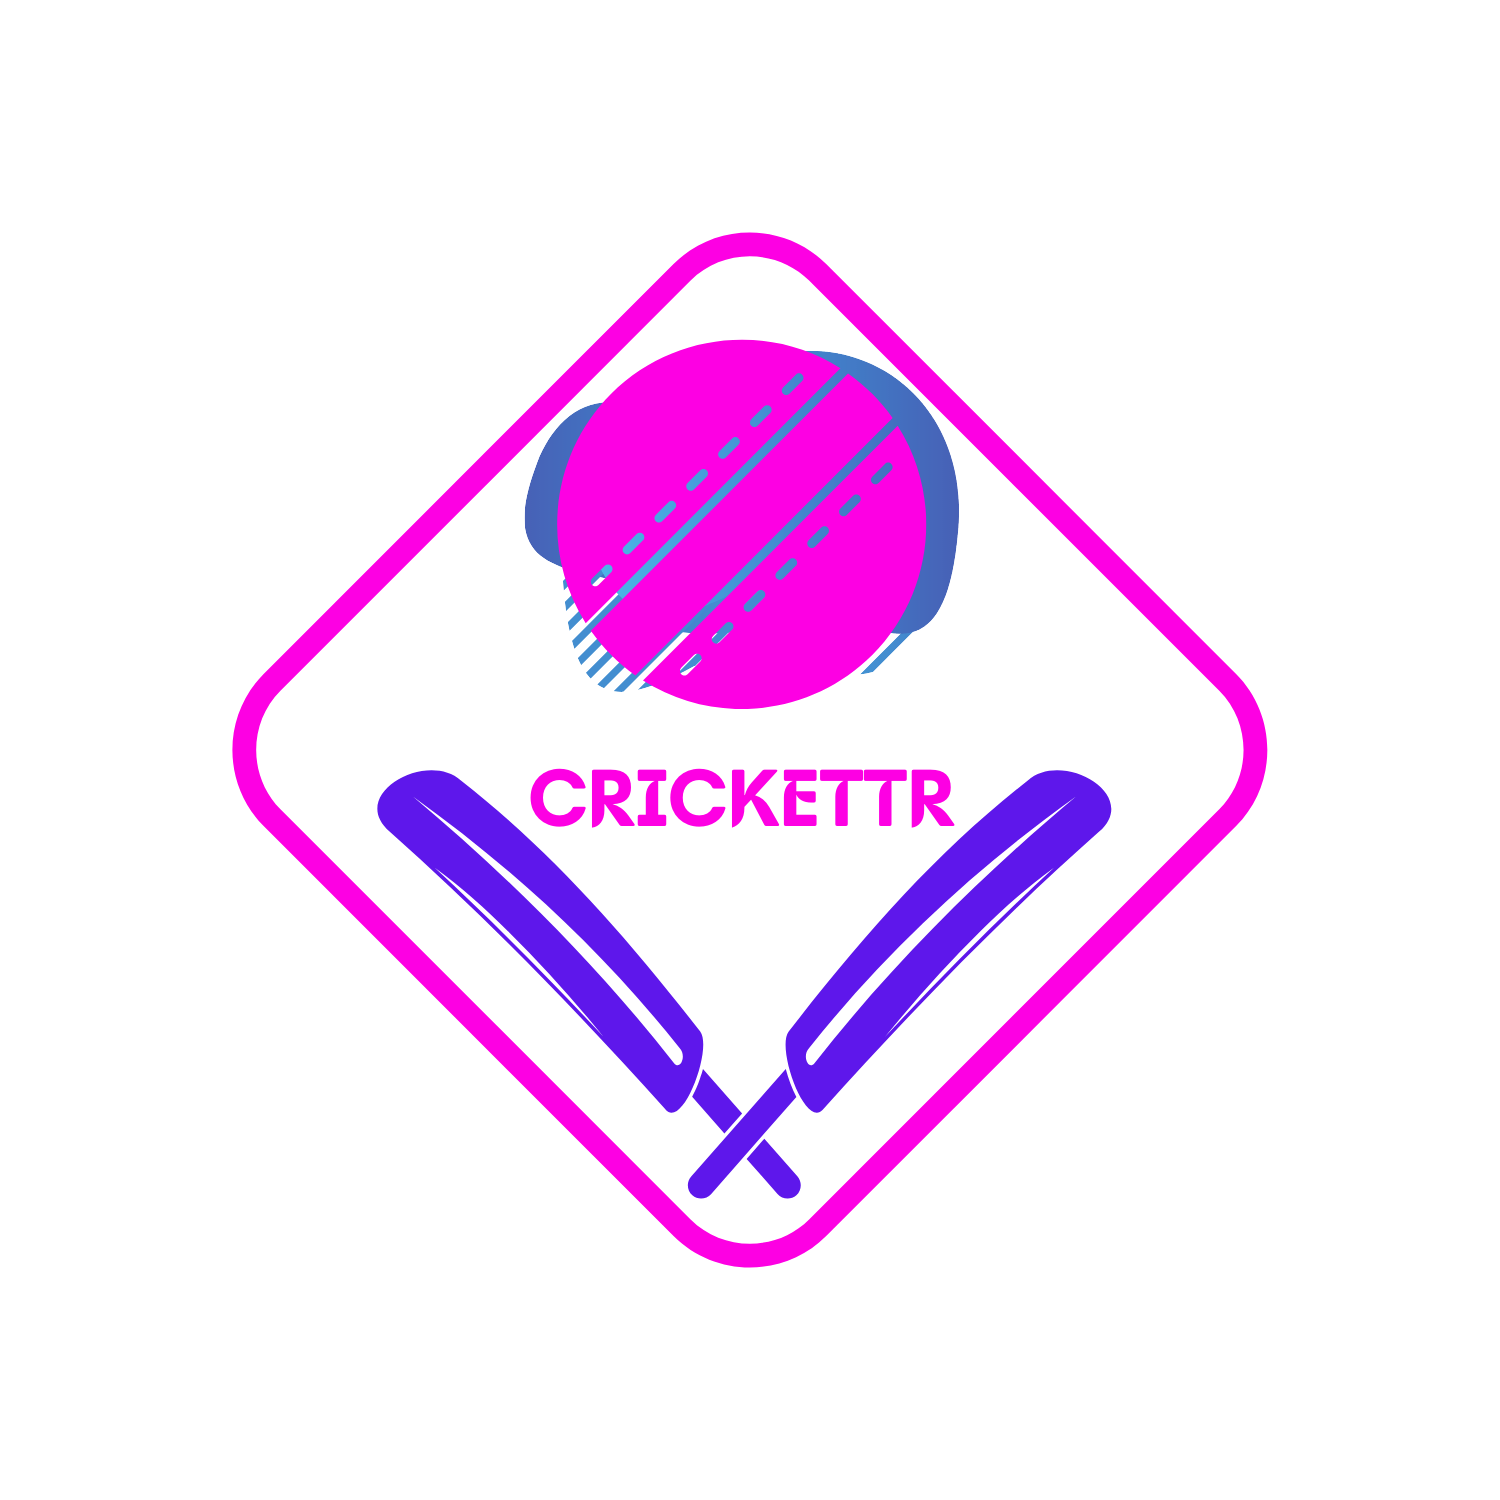 Crickettr